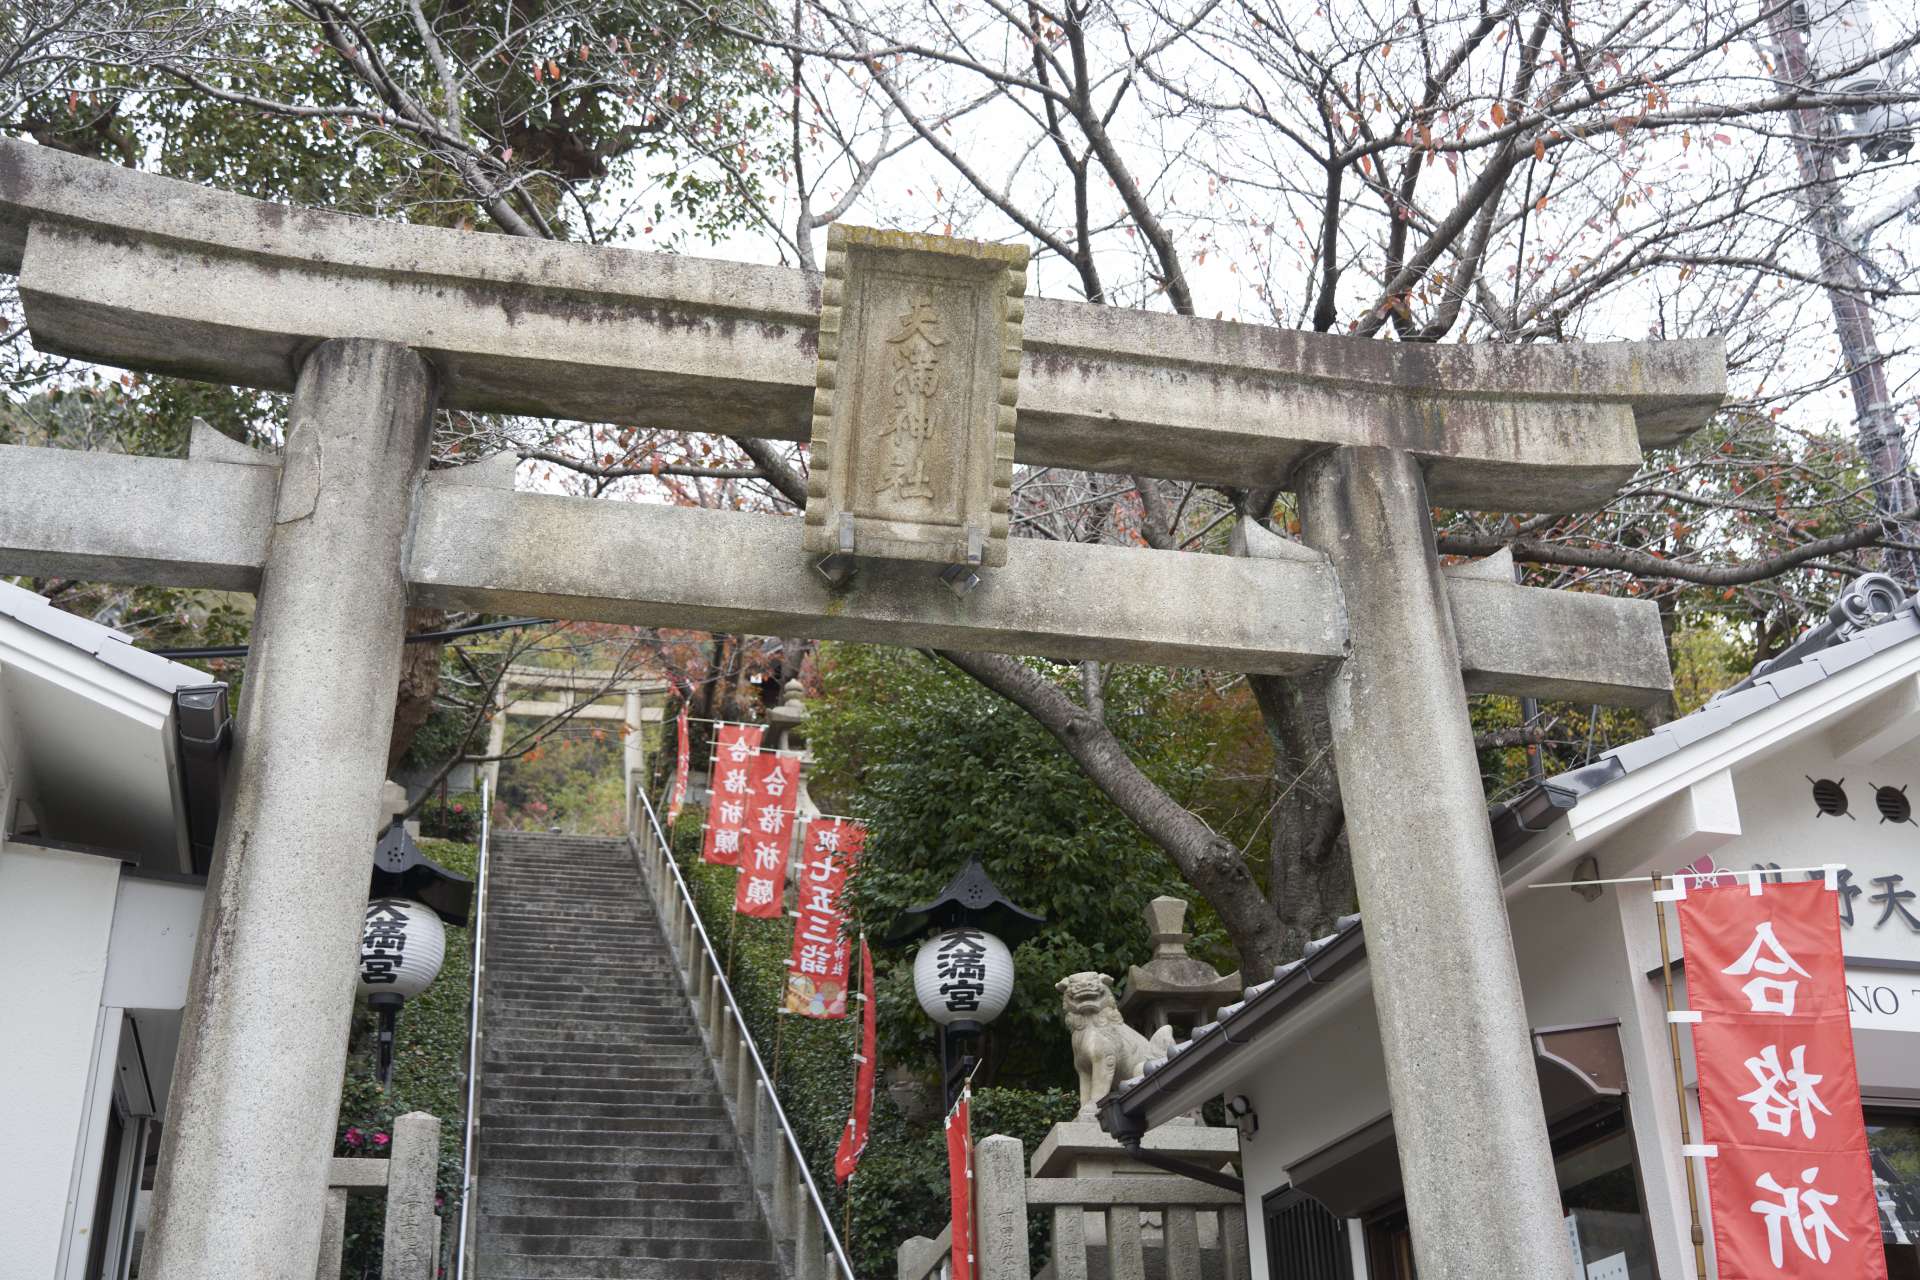 平清盛による創祀以来840余年。高台から神戸の街を見守り続ける